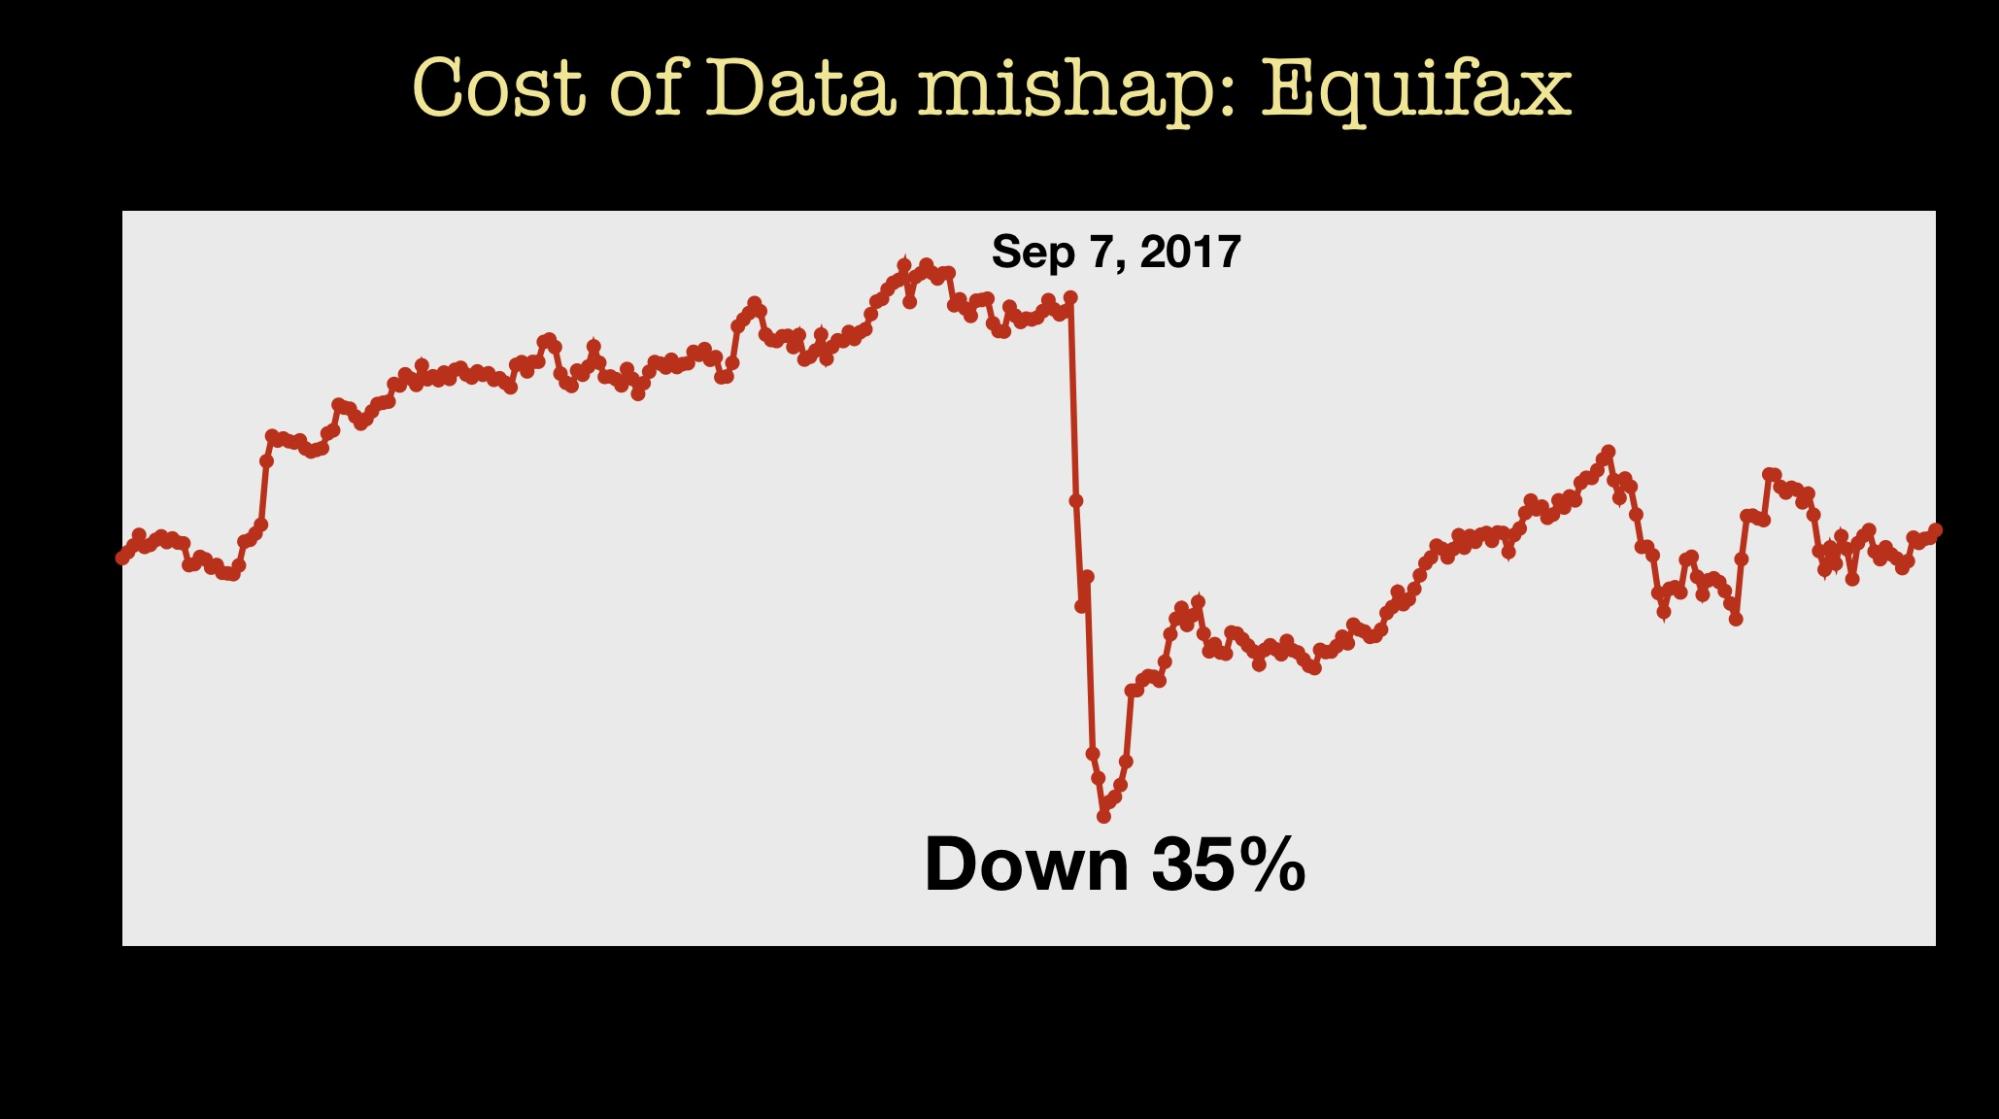 data mishap cost